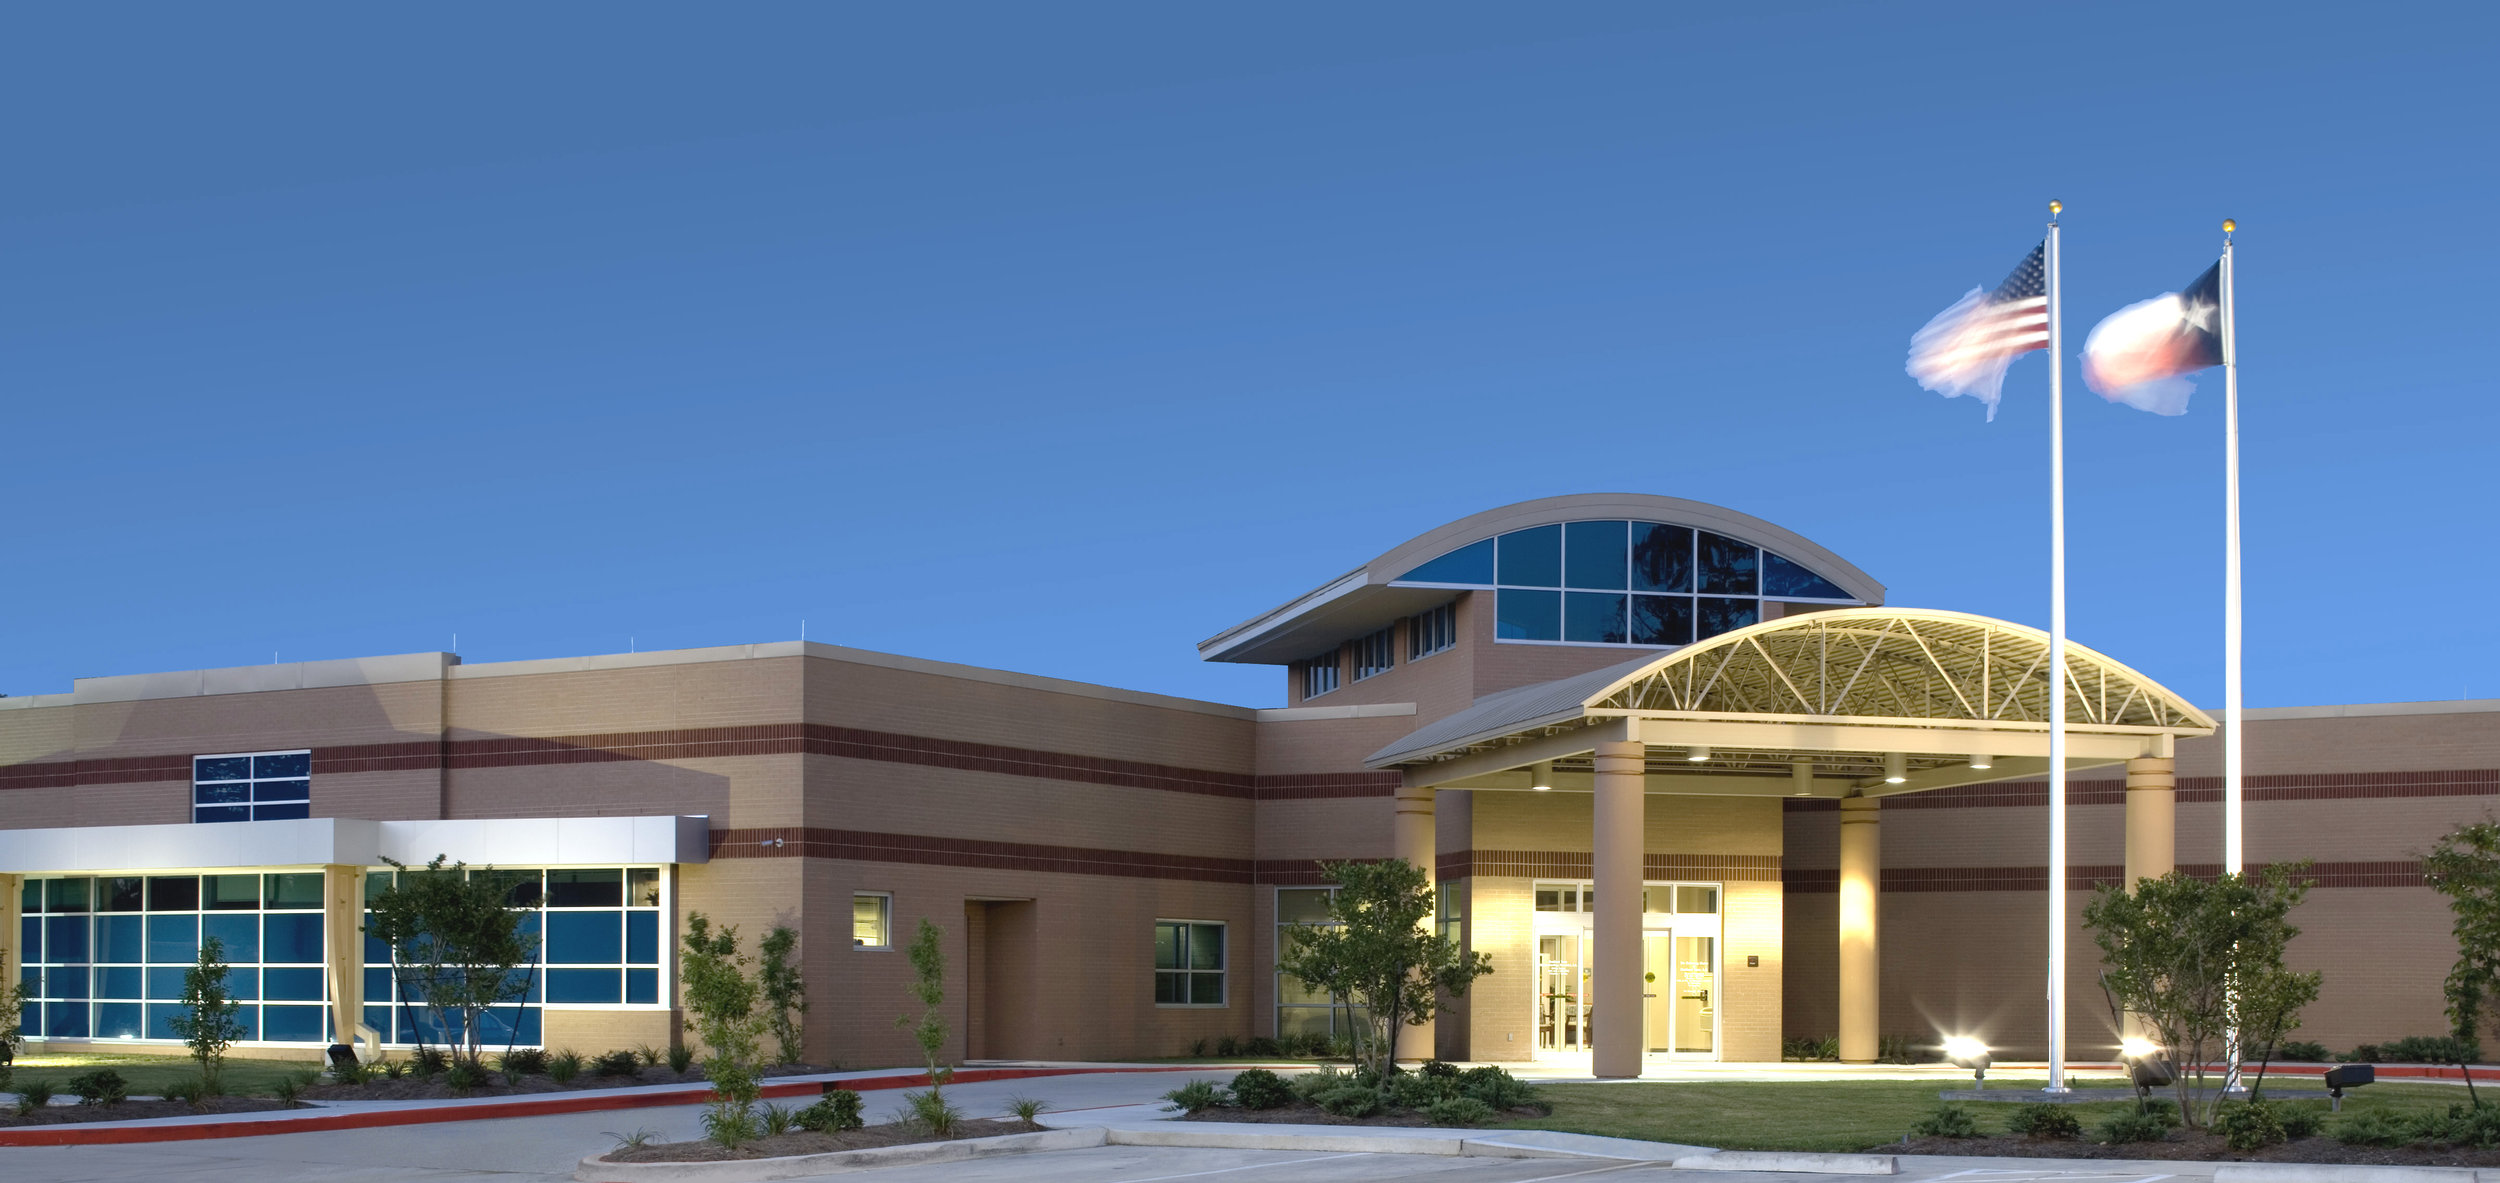 Endoscopy Center of Southeast Texas